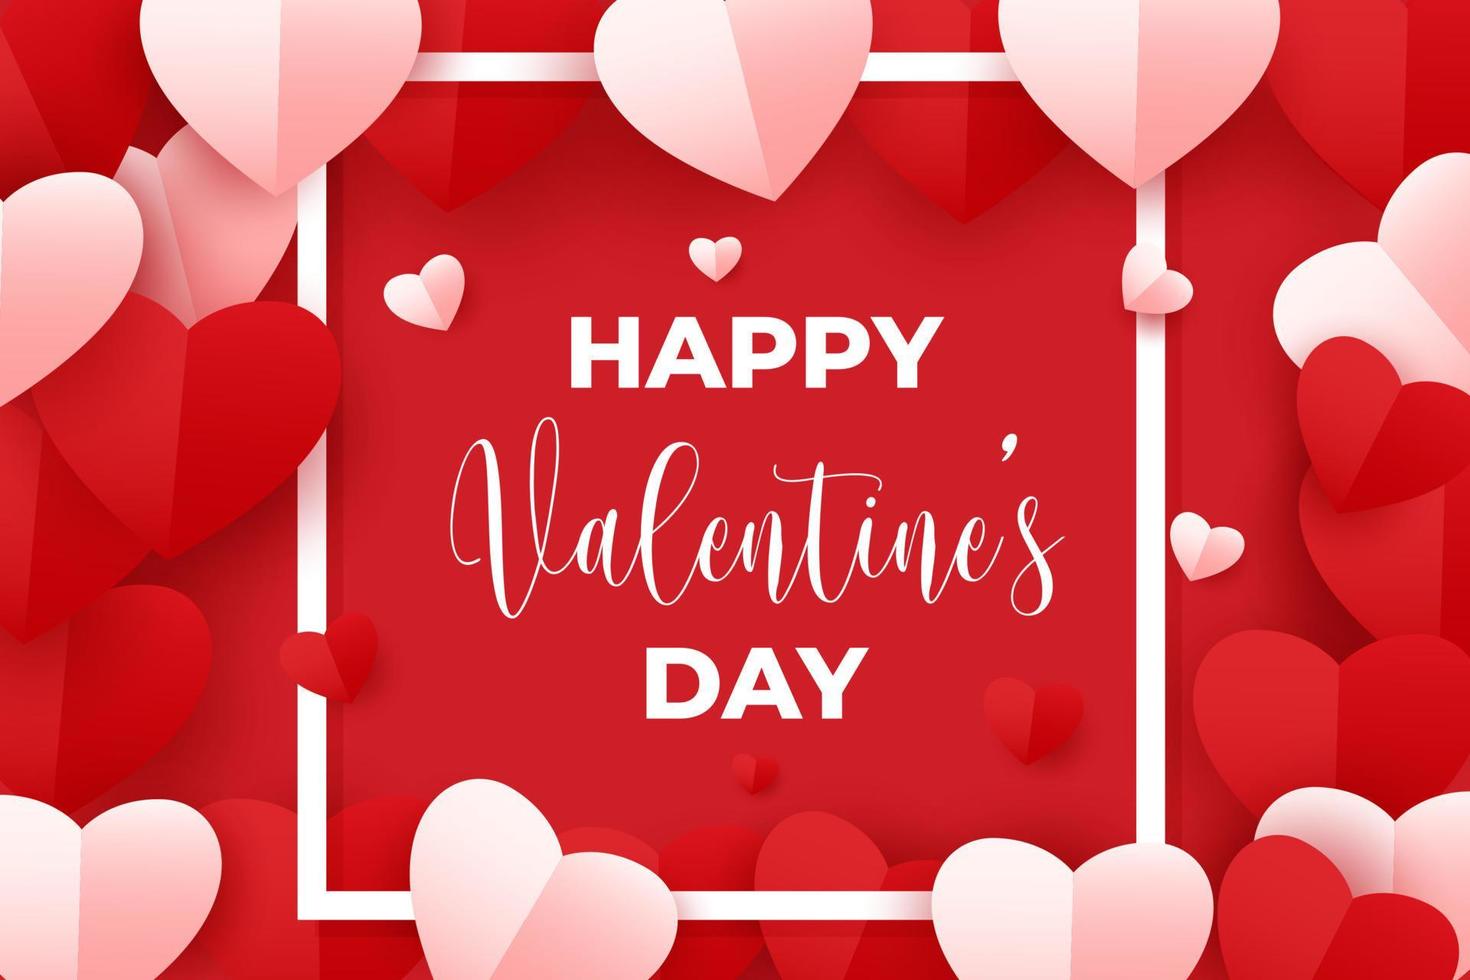 tarjeta de felicitación del día de san valentín feliz. Ilustración vectorial de corazones de papel rojo y rosa con marco cuadrado blanco sobre fondo rojo. vector